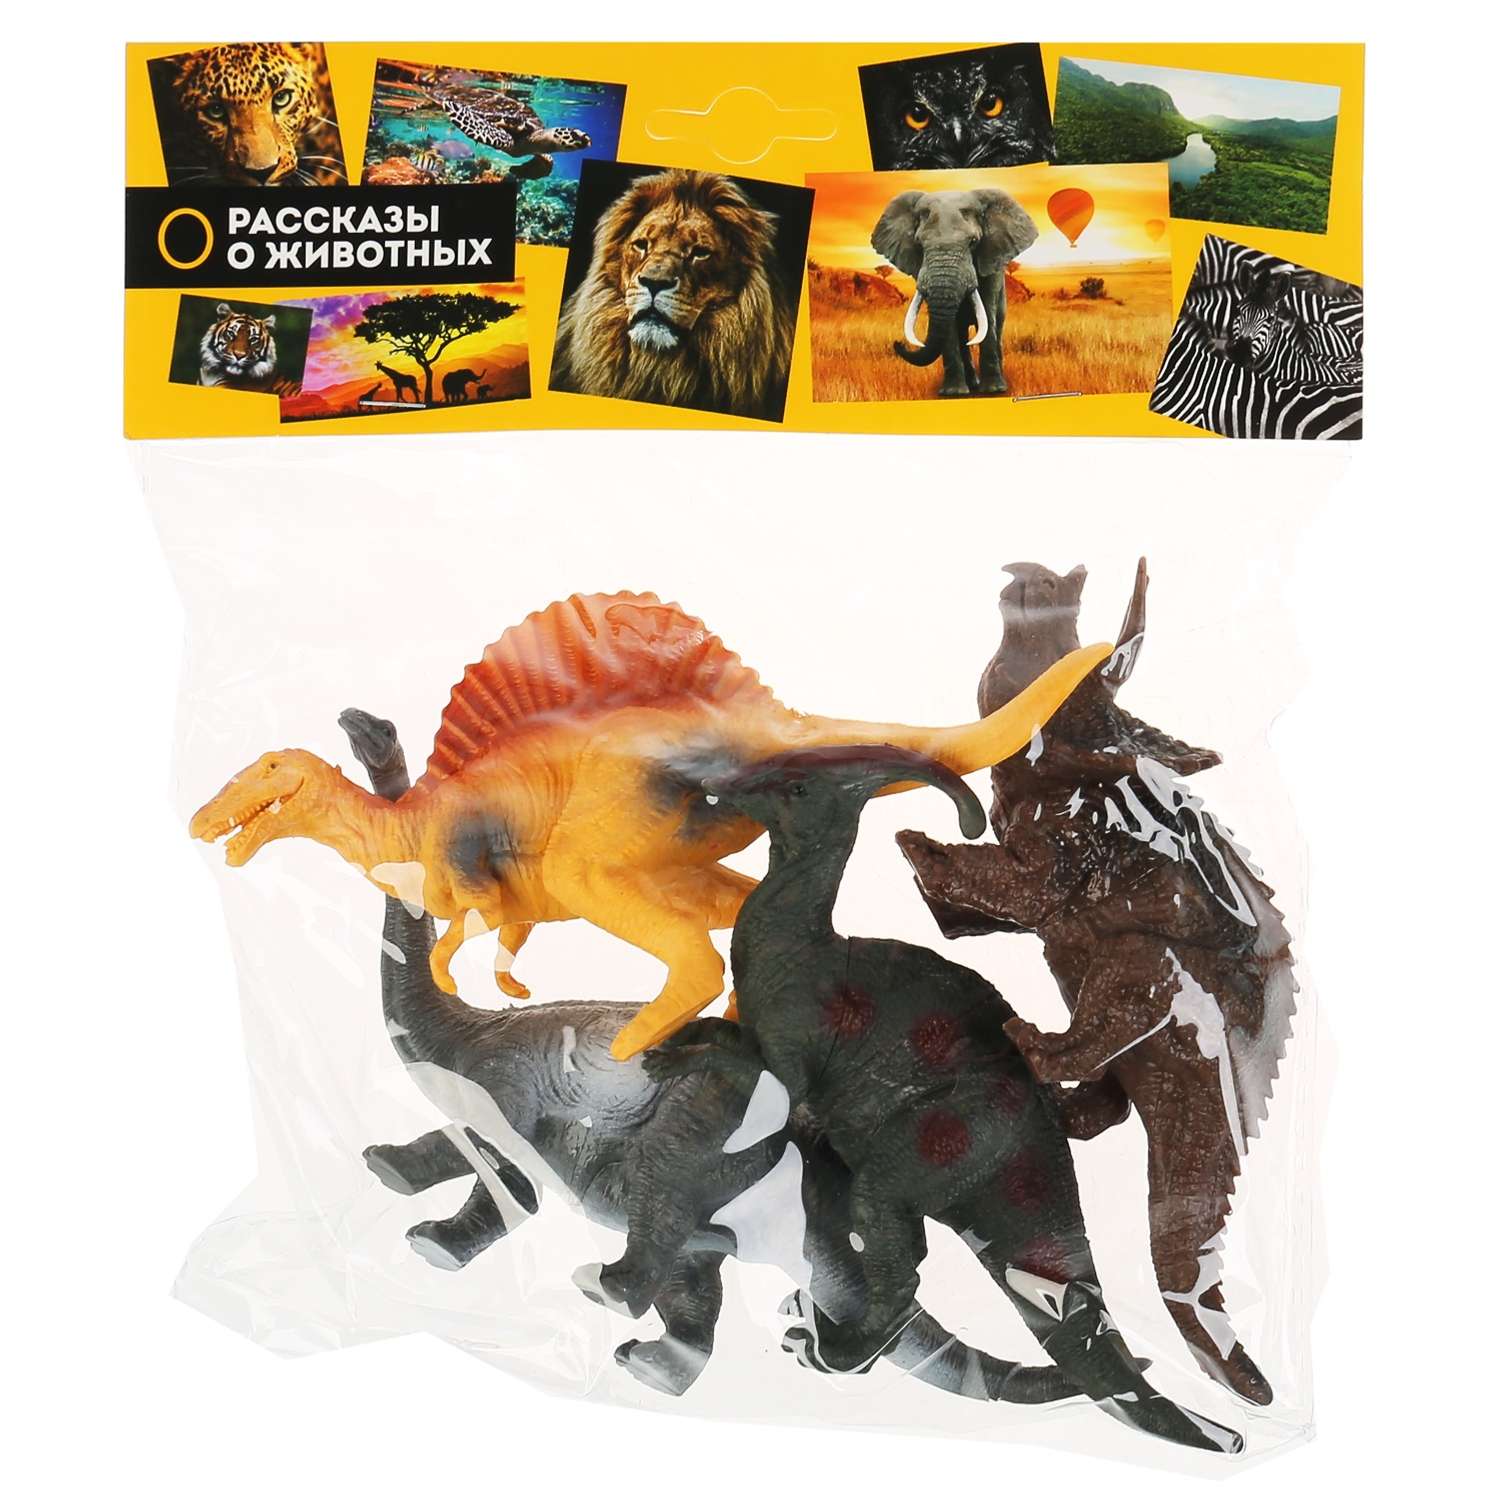 Игрушка Играем Вместе пластизоль Динозавры 4 шт - фото 1